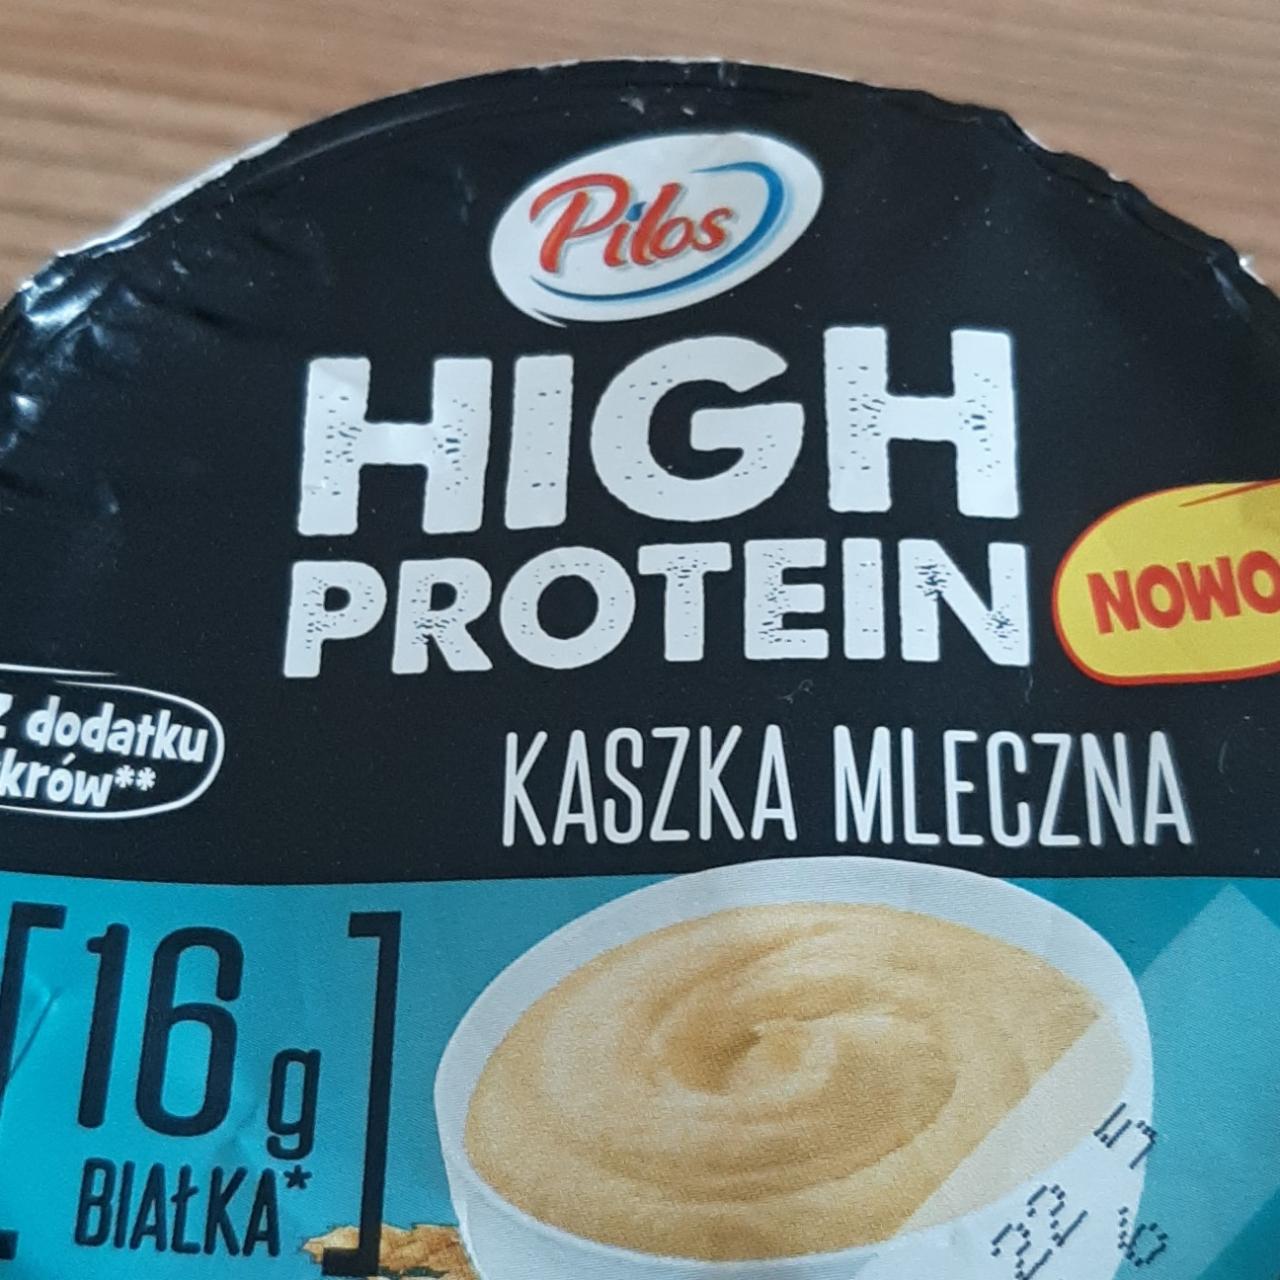 Fotografie - High protein kaszka mleczna Pilos